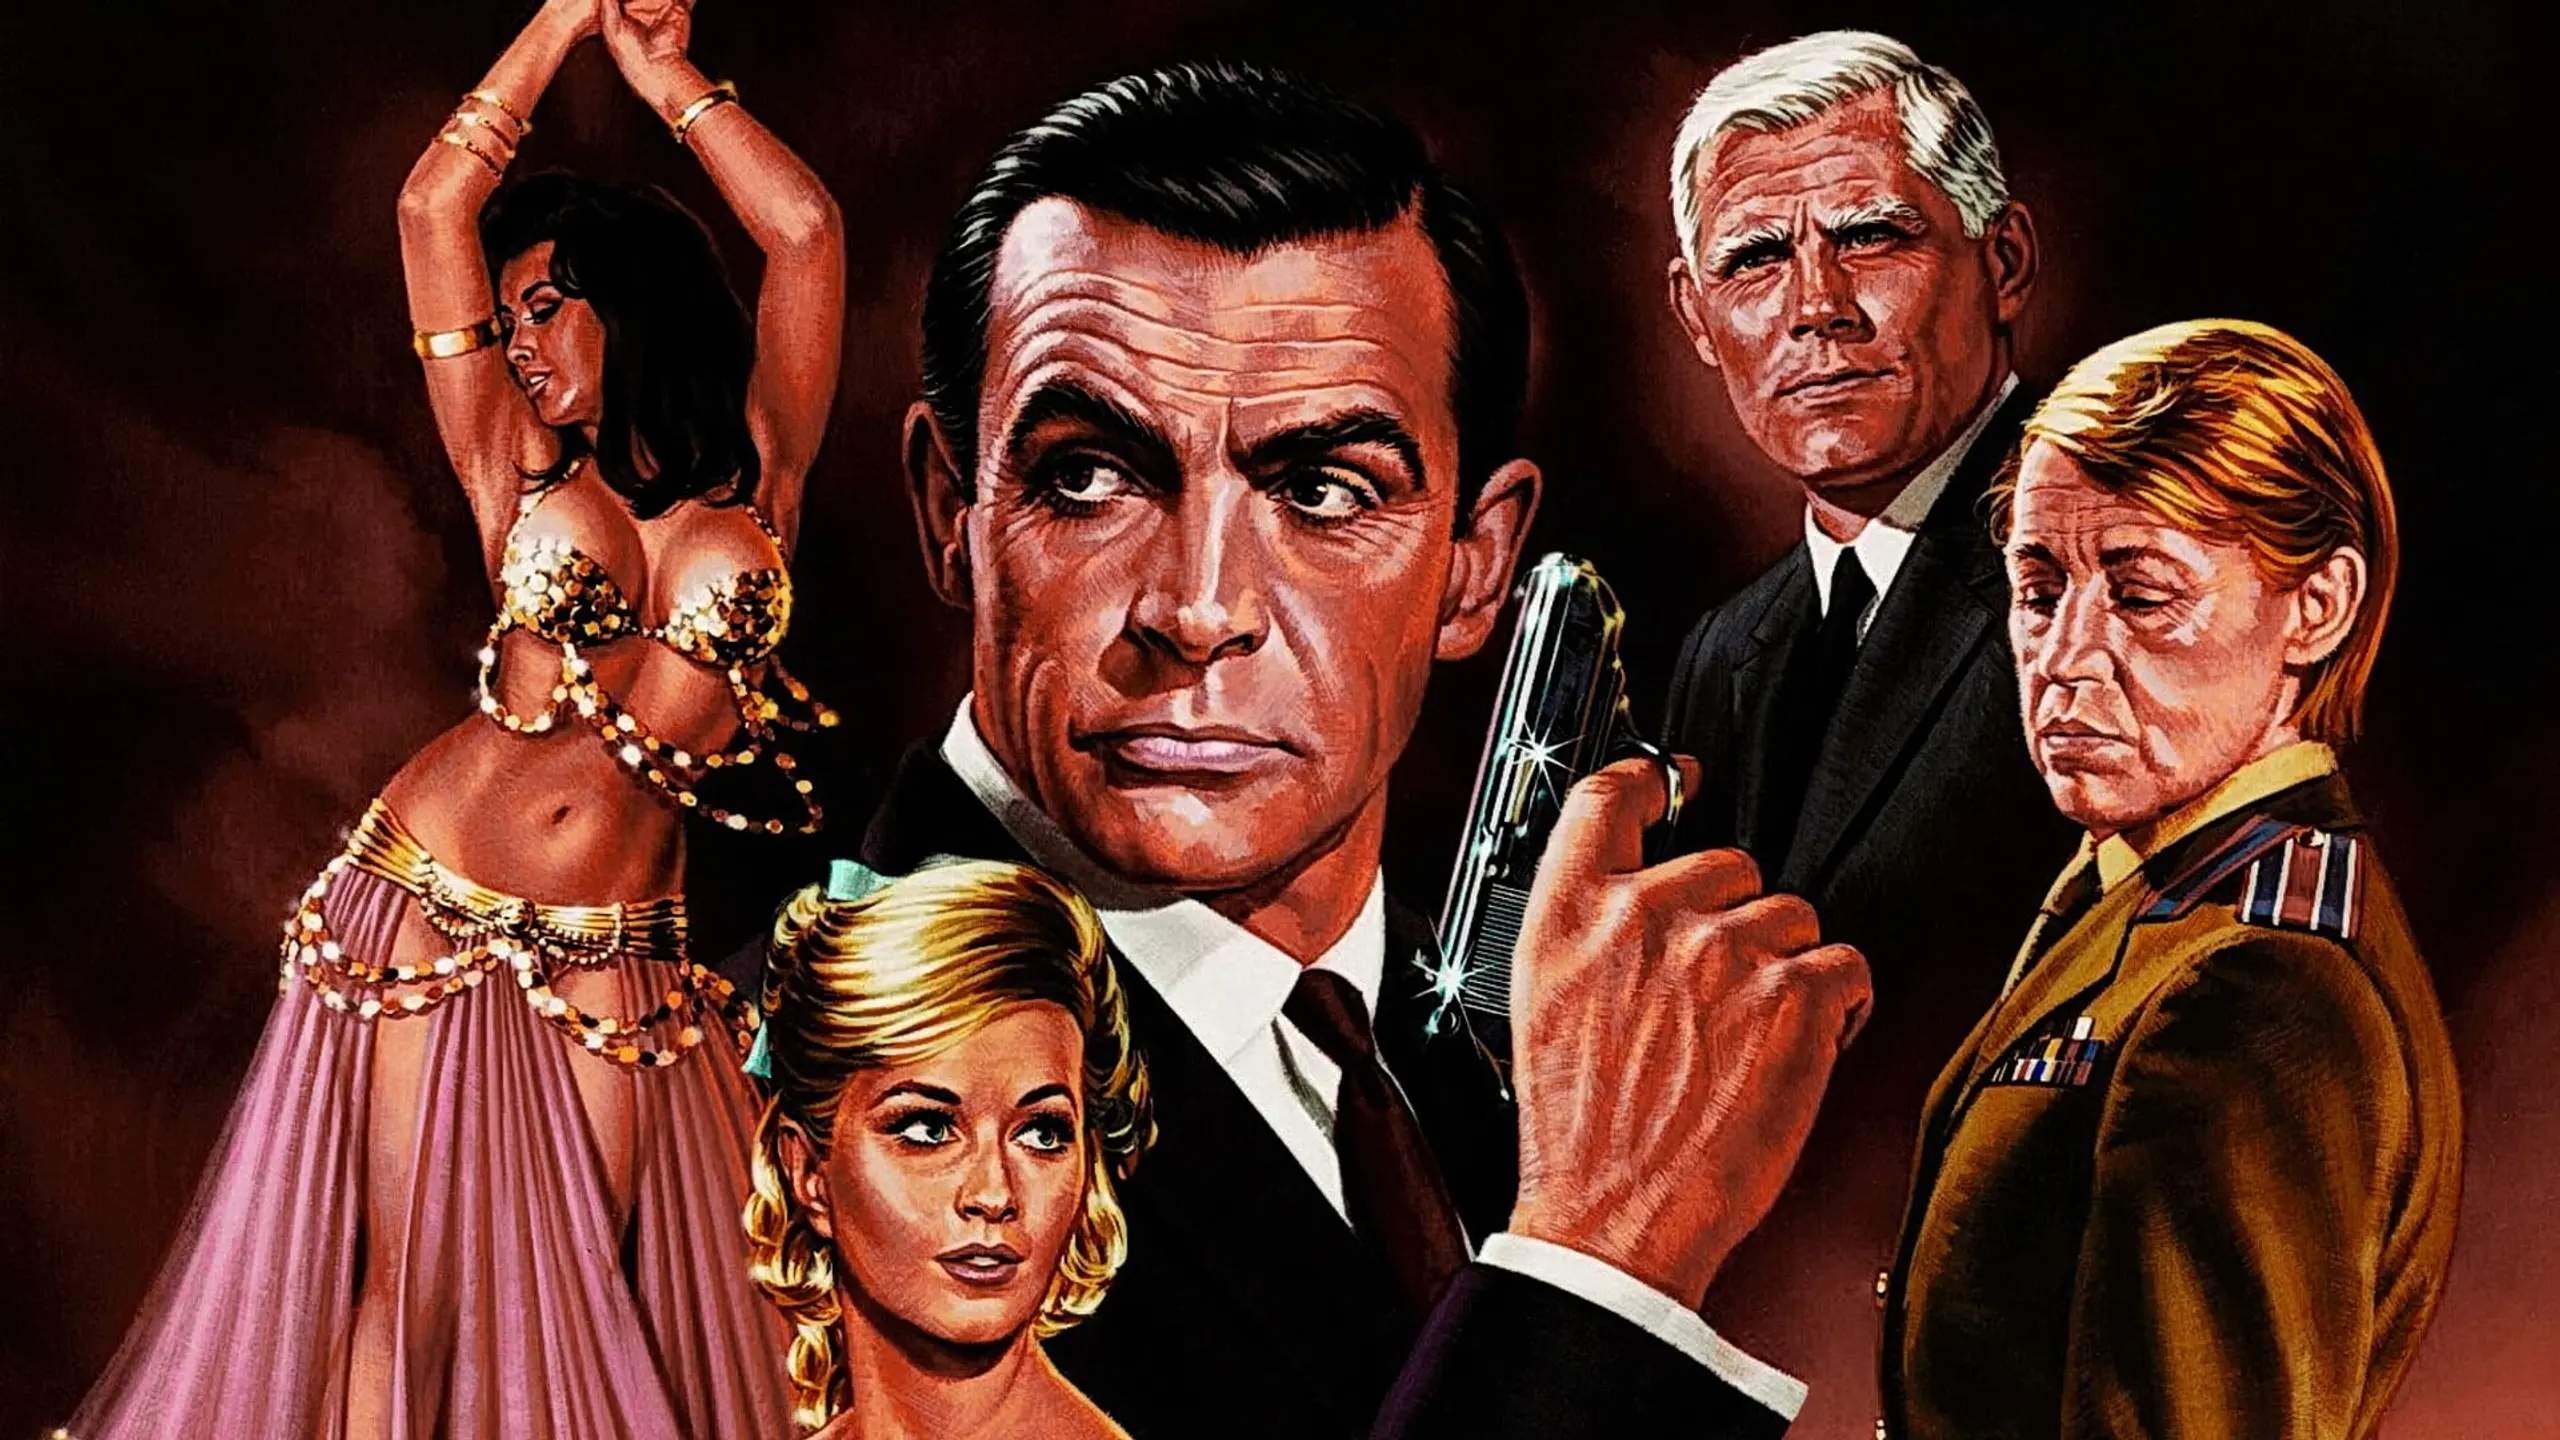 James Bond 007 – Liebesgrüße aus Moskau